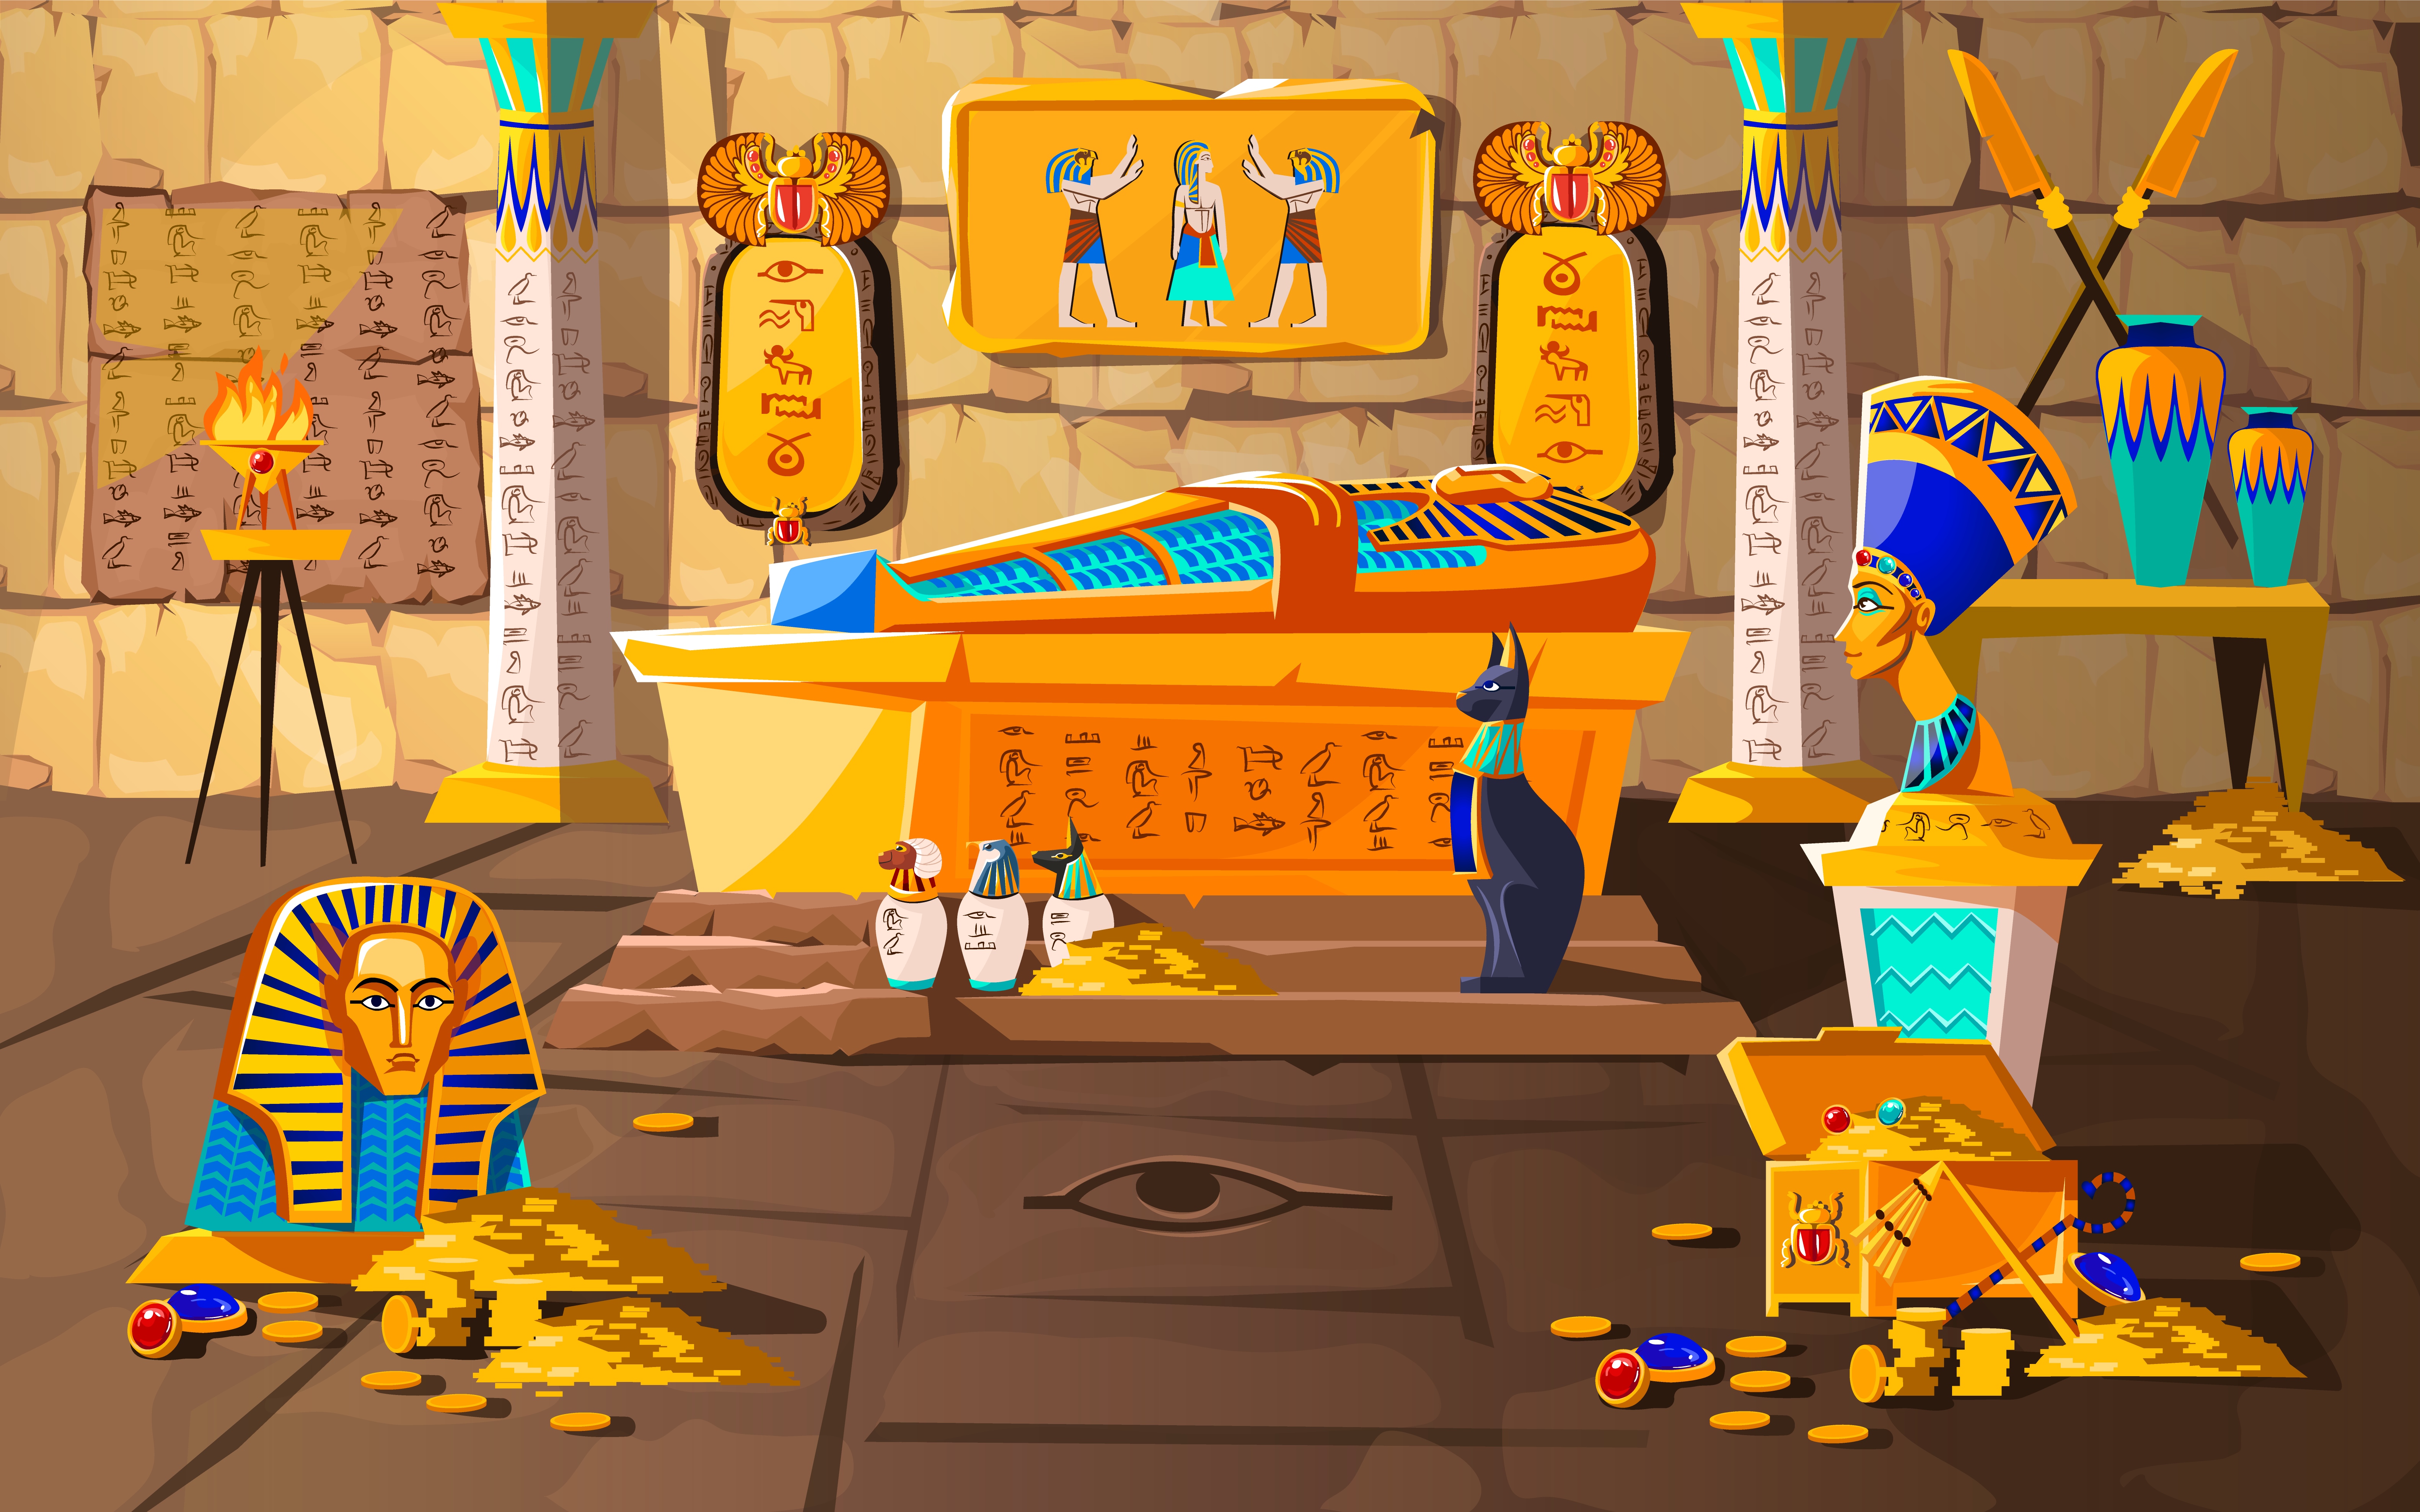 Ancient Egypt tomb of pharaoh cartoons vector - Download Free Vectors